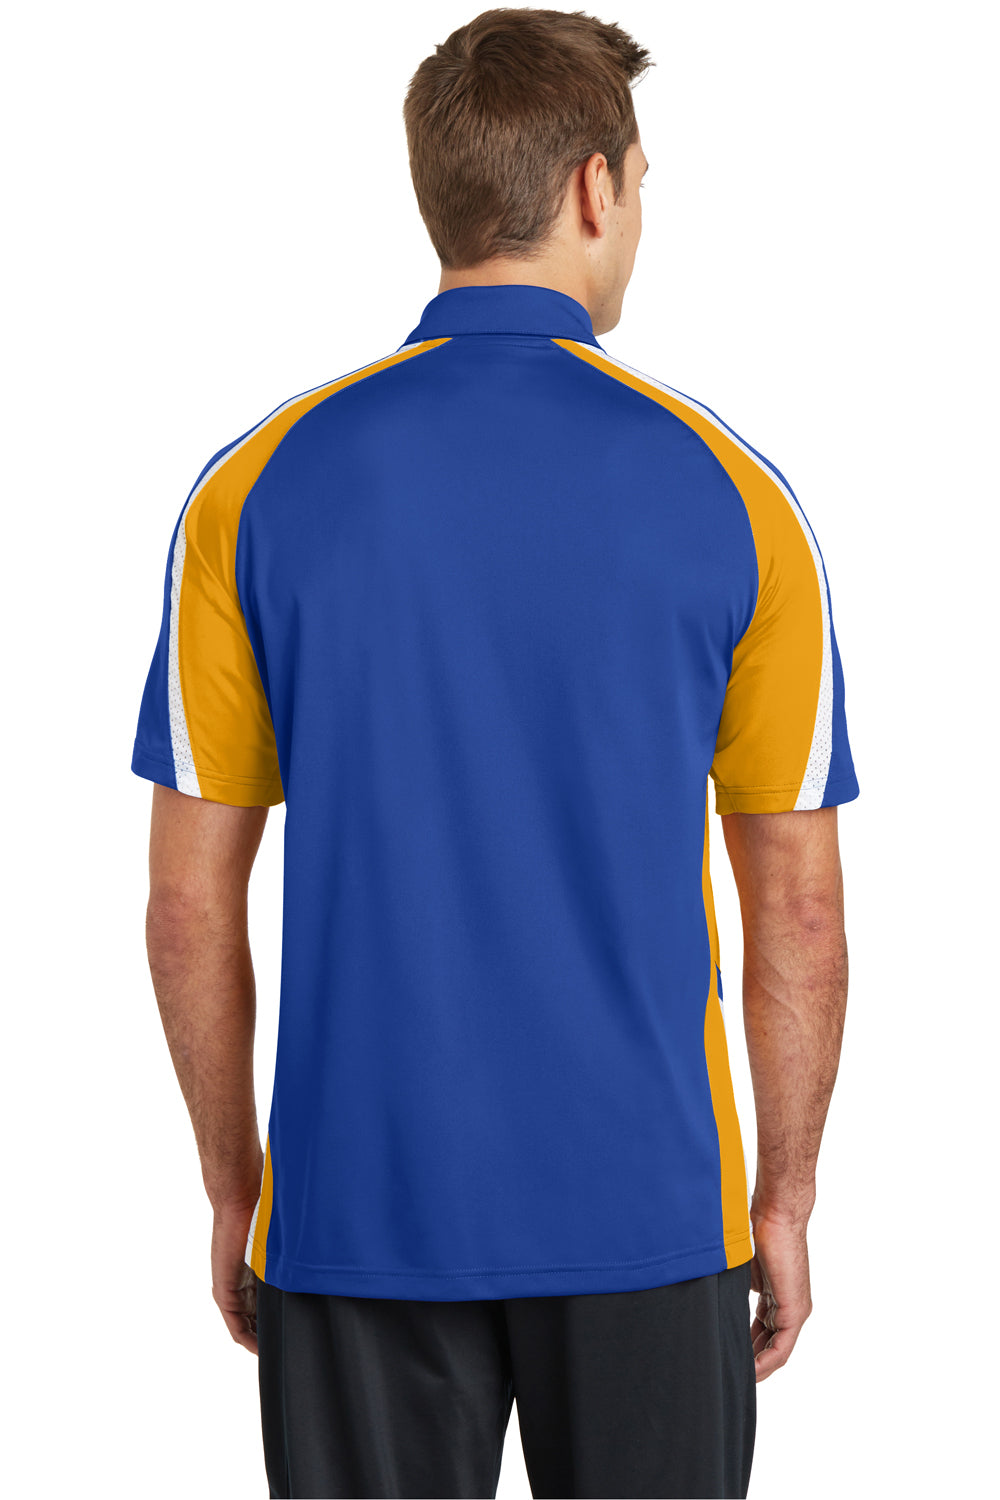 Sport-Tek ST654 Mens Sport-Wick Moisture Wicking Short Sleeve Polo Shirt Royal Blue/Gold/White Back